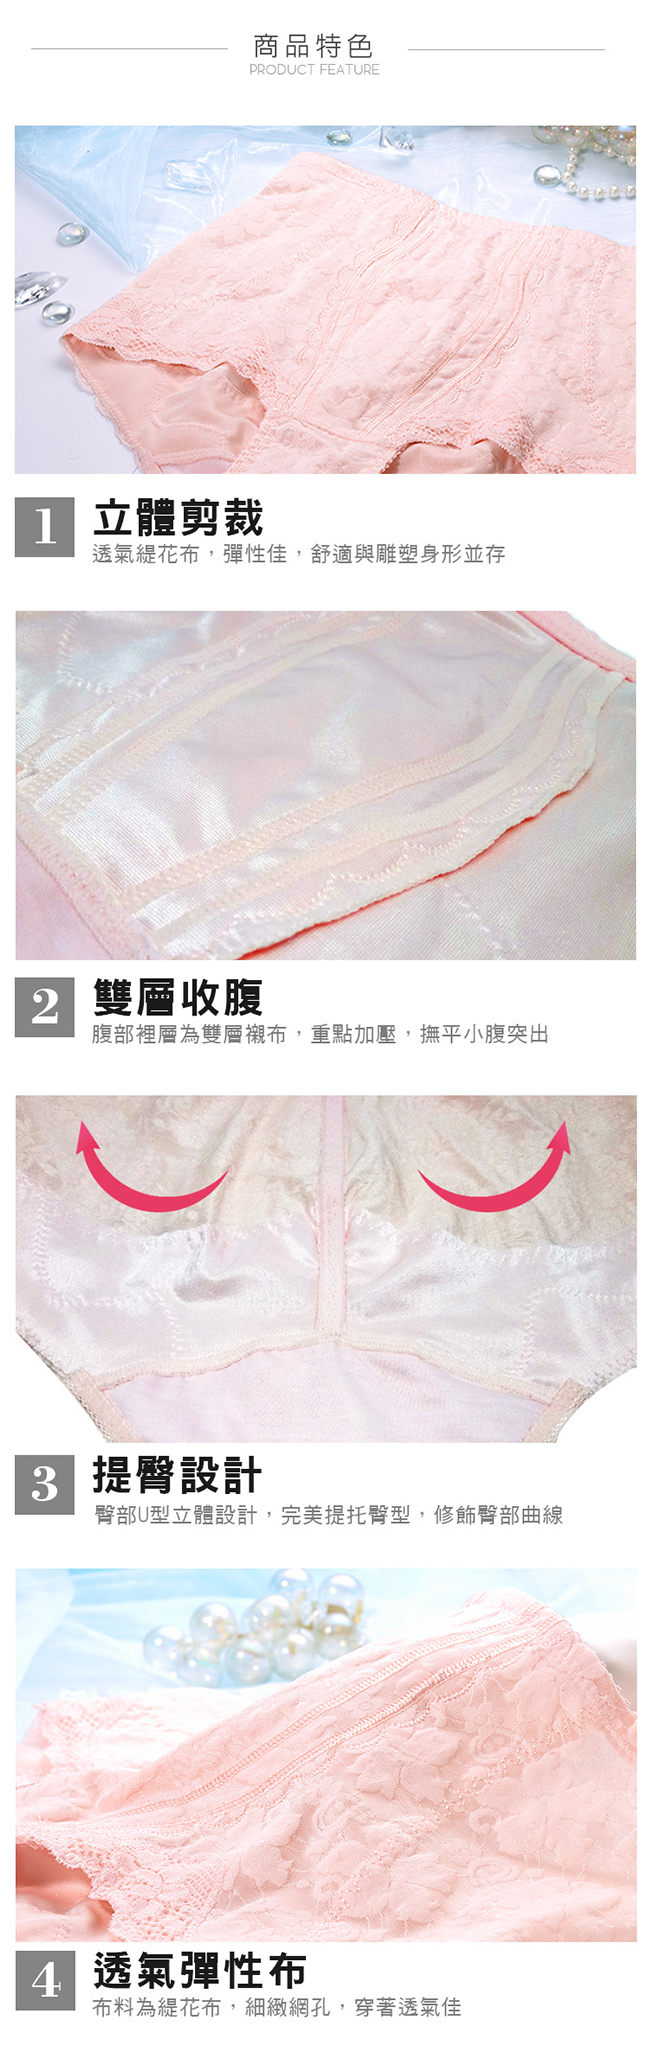 席艾妮SHIANEY 台灣製造 輕機能高腰平腹束提臀內褲